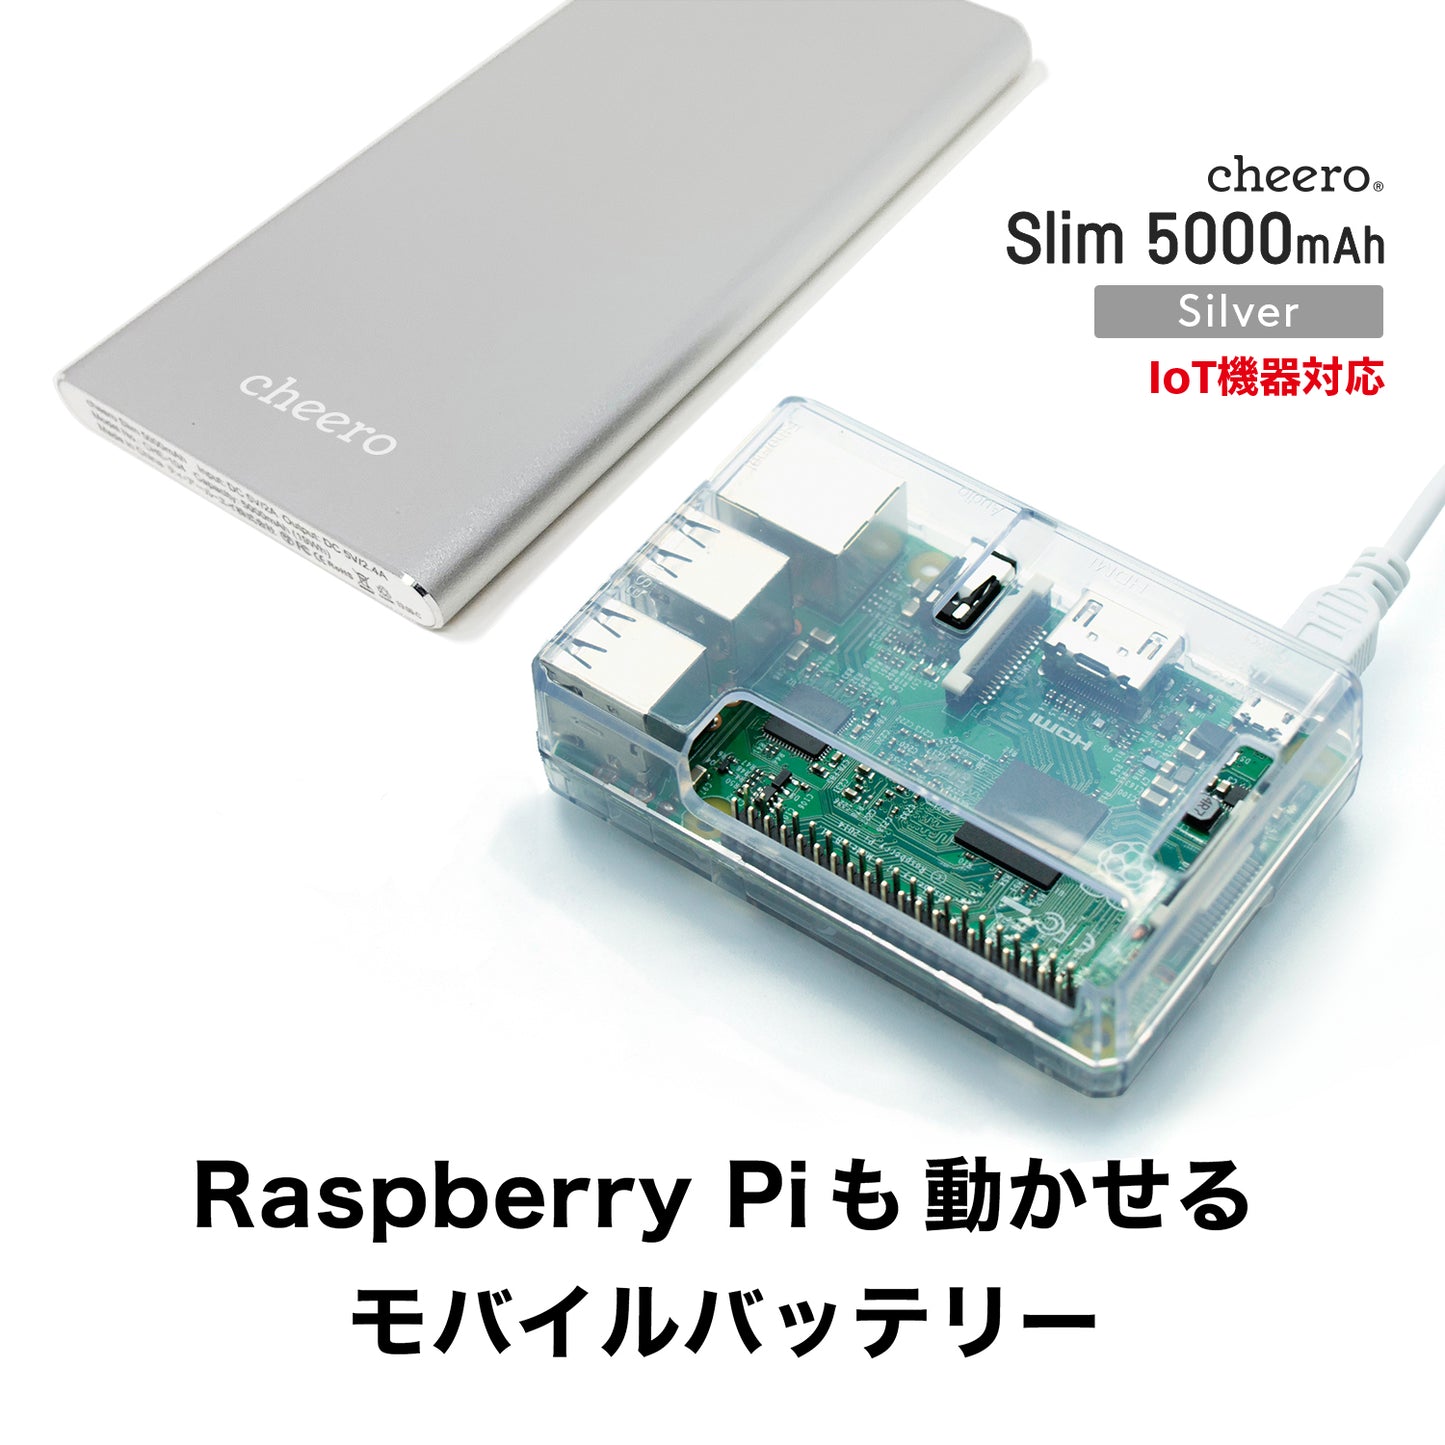 cheero Slim 5000mAh IoT機器対応 【USB-C ver.】